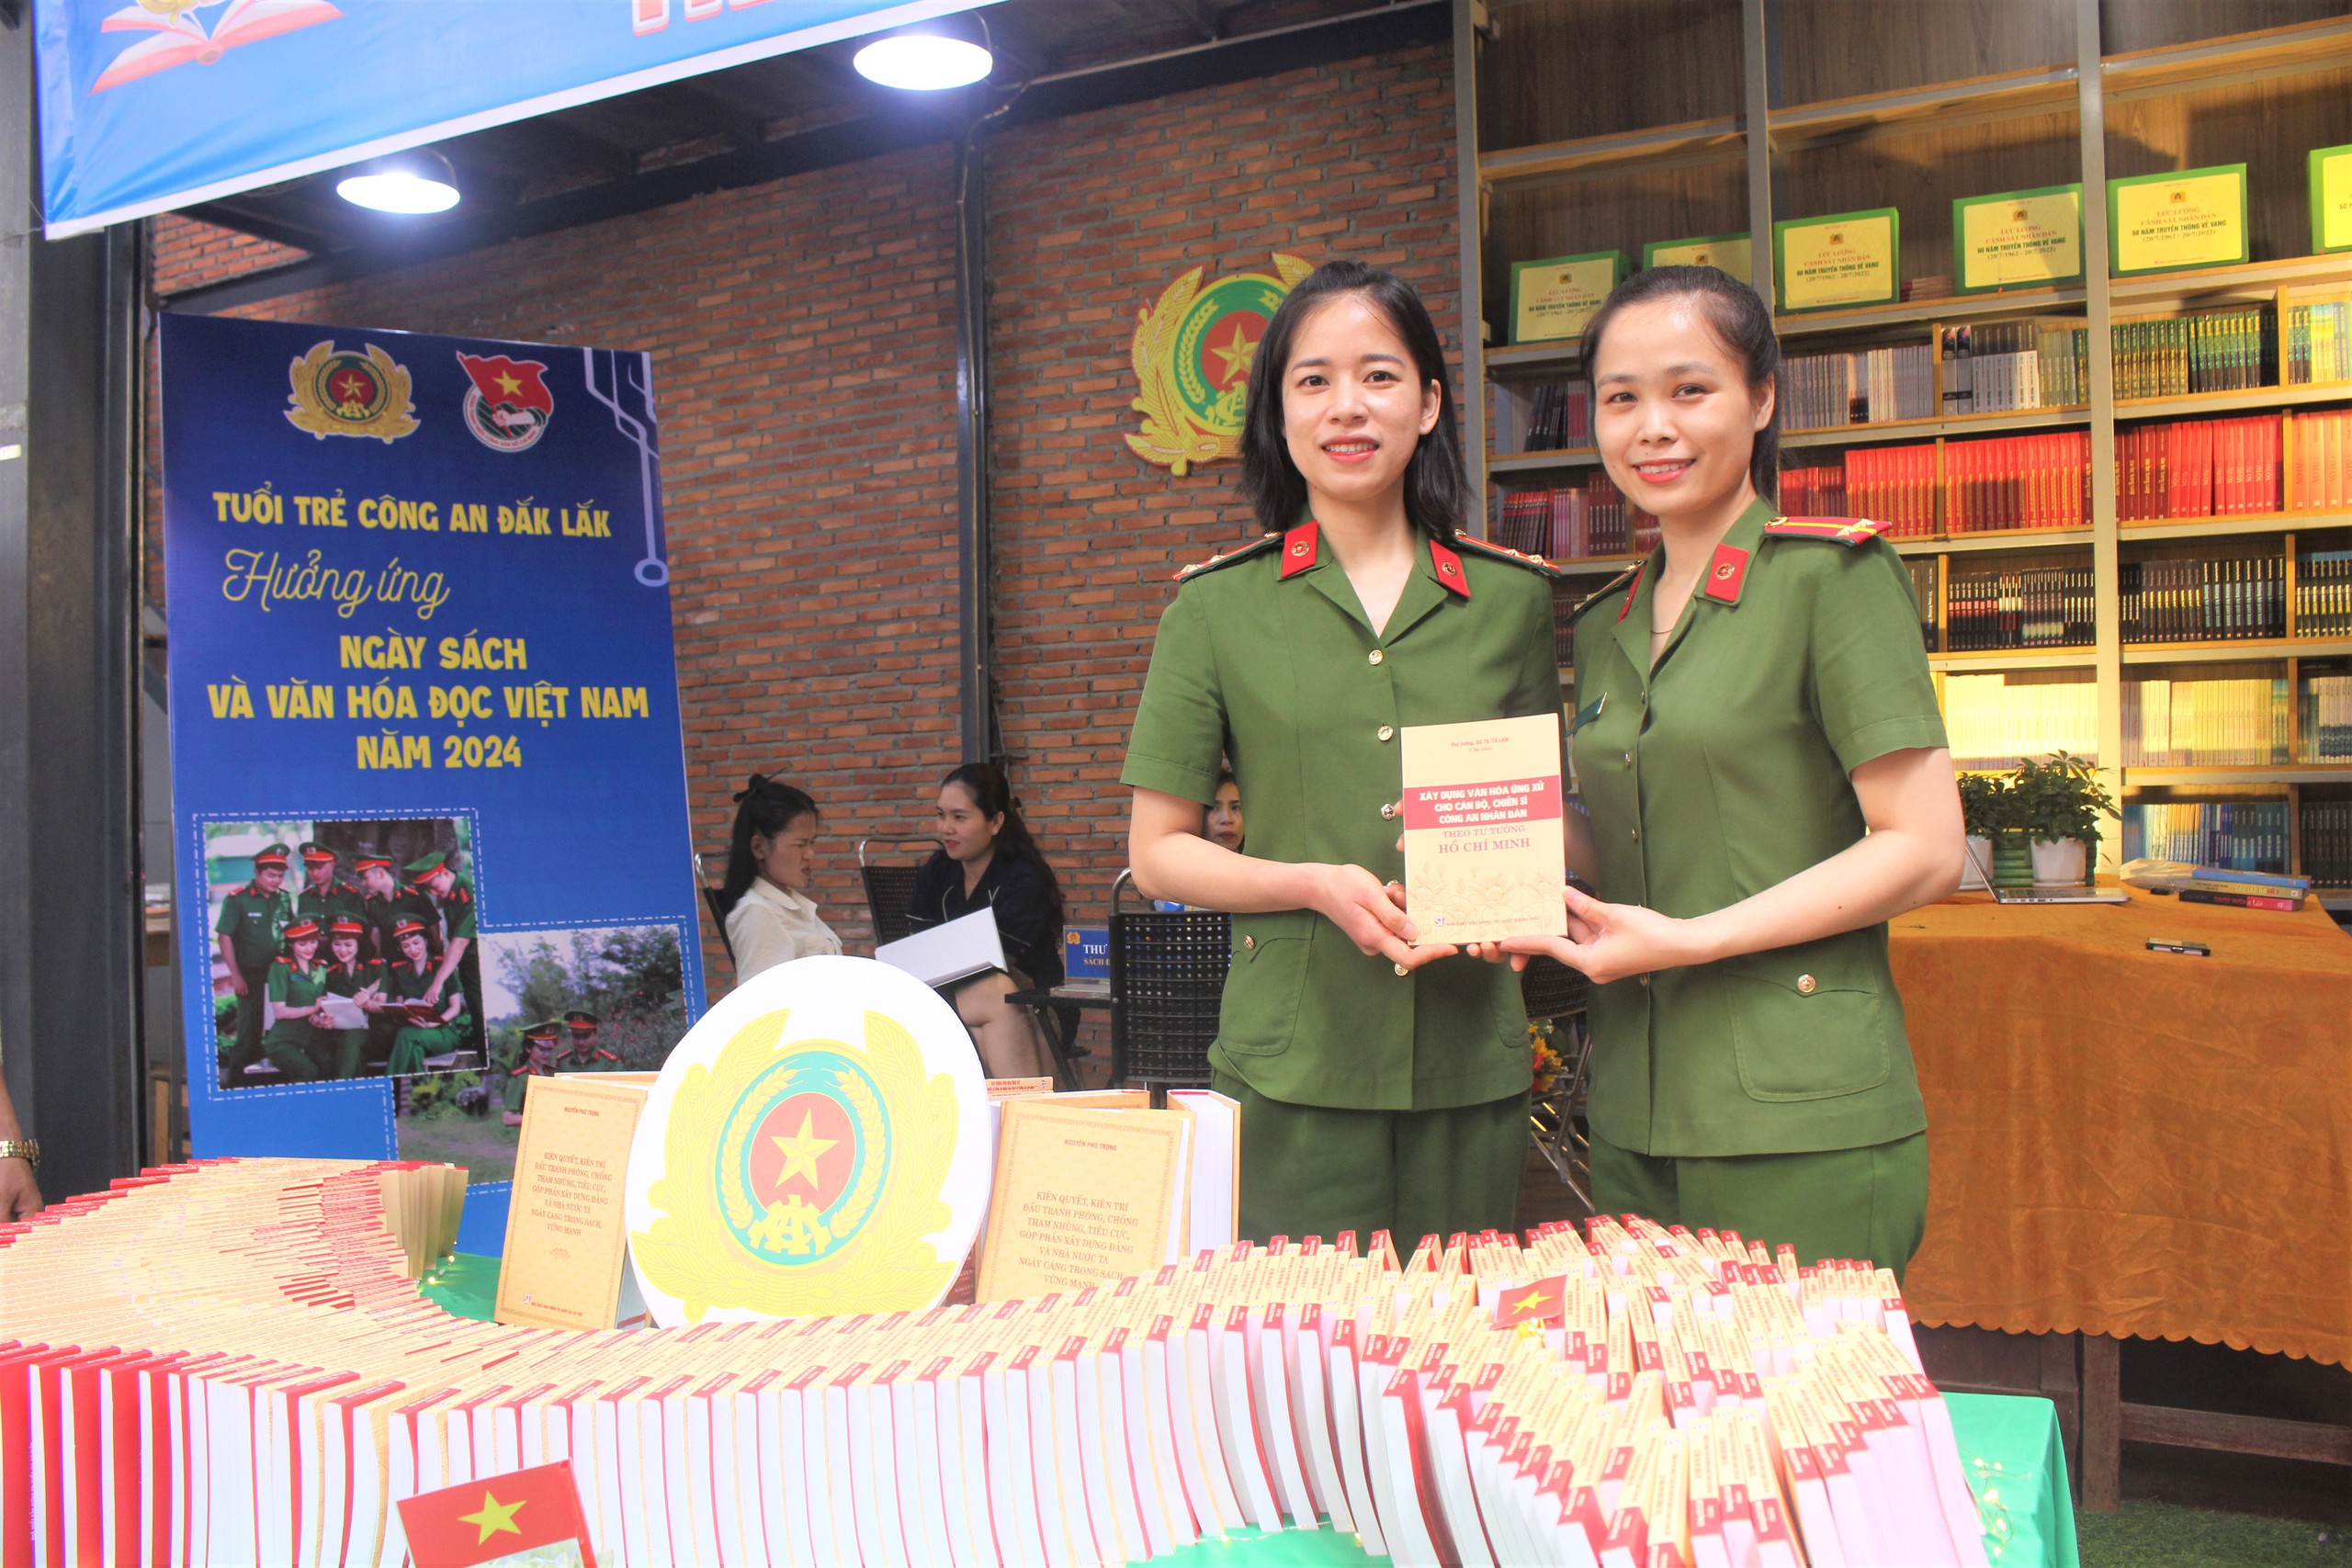 Sôi nổi các hoạt động hưởng ứng Ngày Sách và Văn hóa đọc năm 2024 tại Đắk Lắk- Ảnh 11.